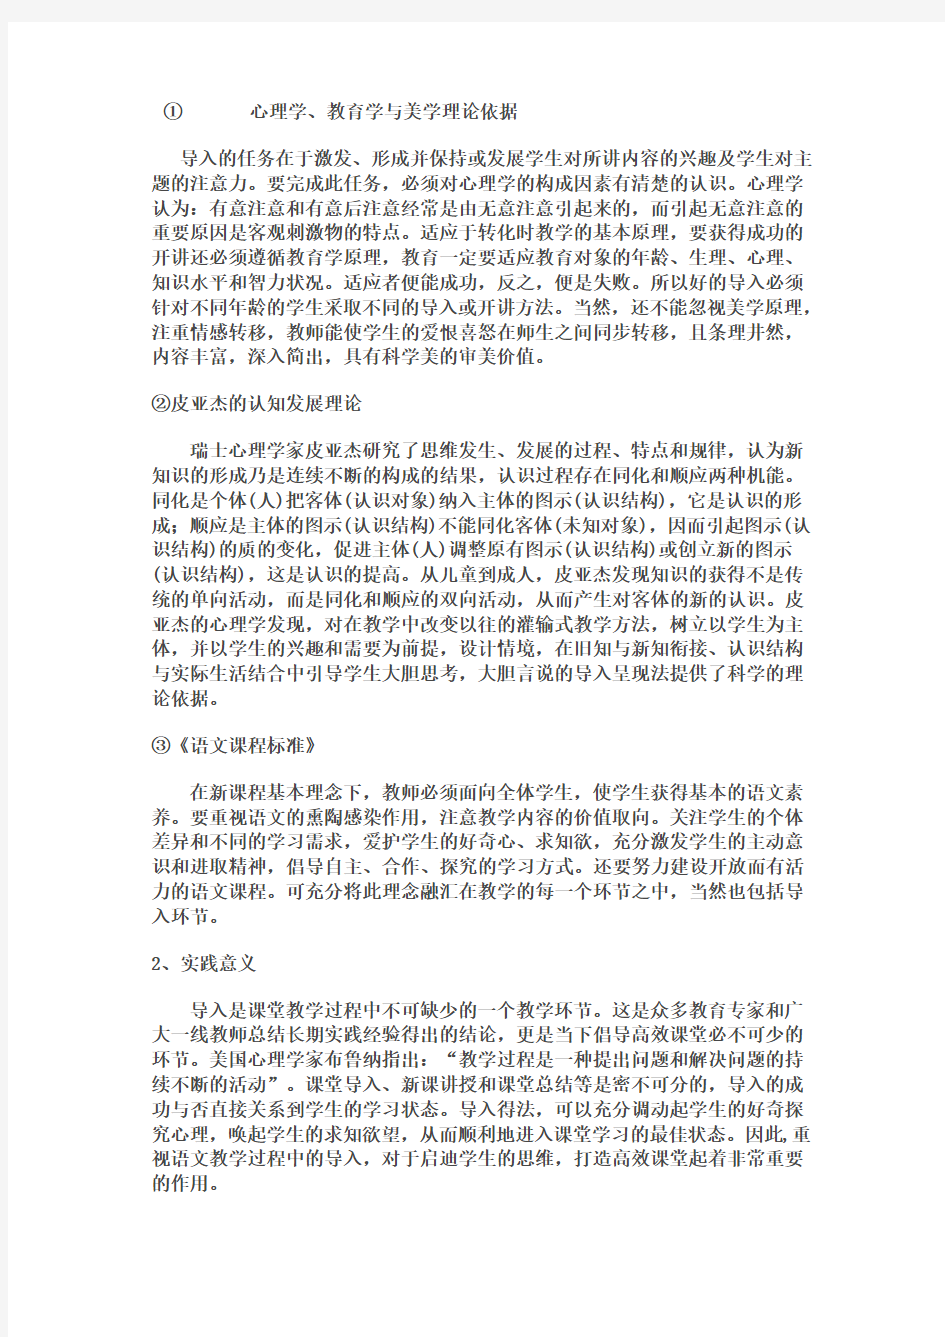 《初中语文课堂导入特点及方法研究》开题报告